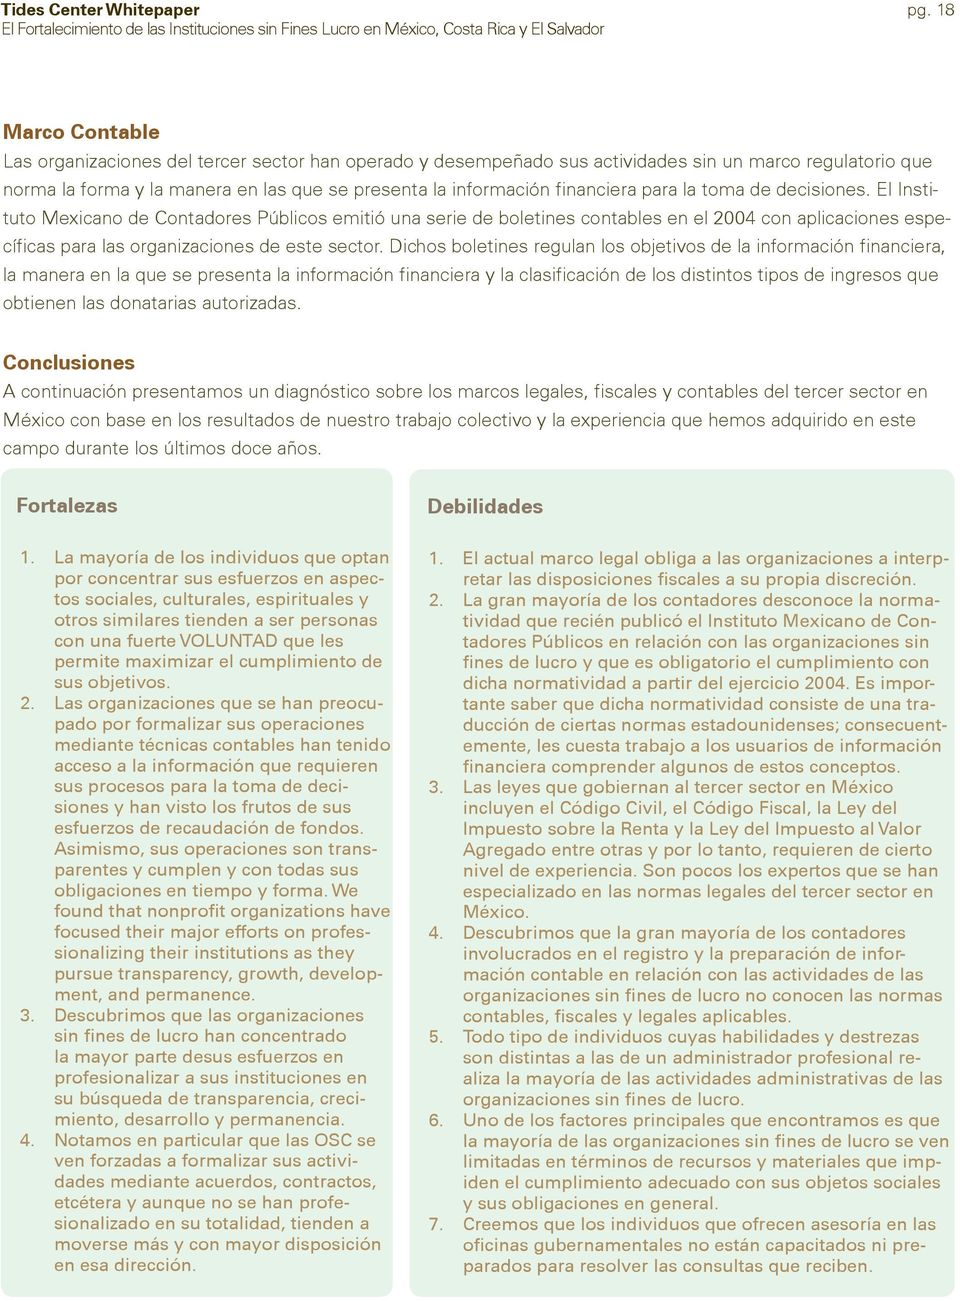 El Instituto Mexicano de Contadores Públicos emitió una serie de boletines contables en el 2004 con aplicaciones específicas para las organizaciones de este sector.